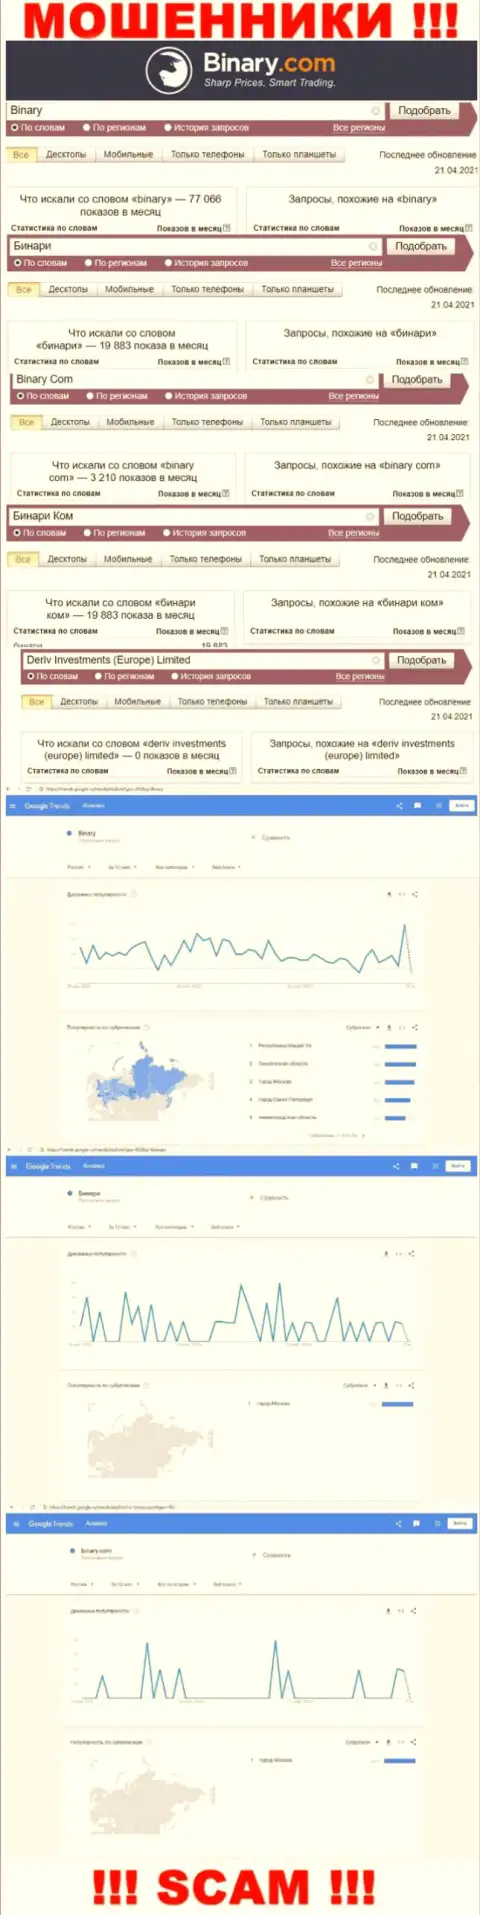 Количество online запросов информации о мошенниках Бинари в internet сети